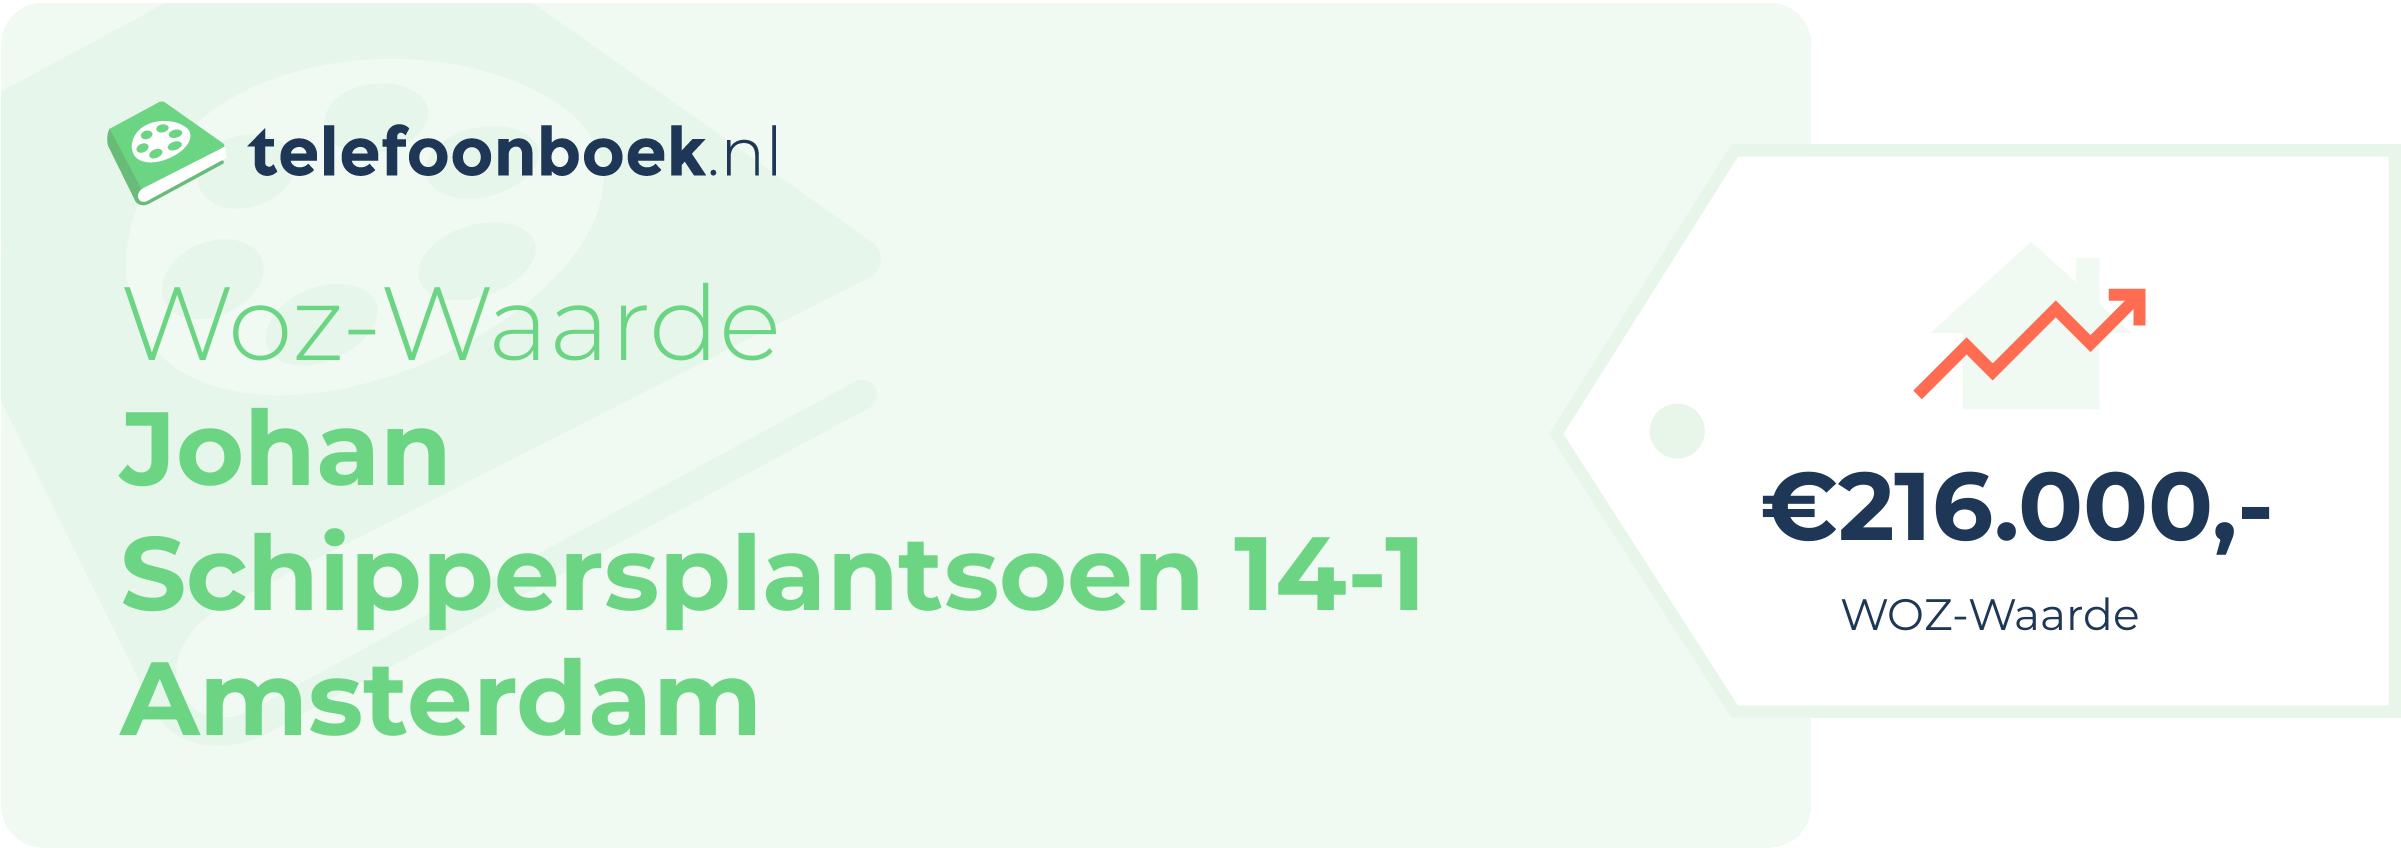 WOZ-waarde Johan Schippersplantsoen 14-1 Amsterdam